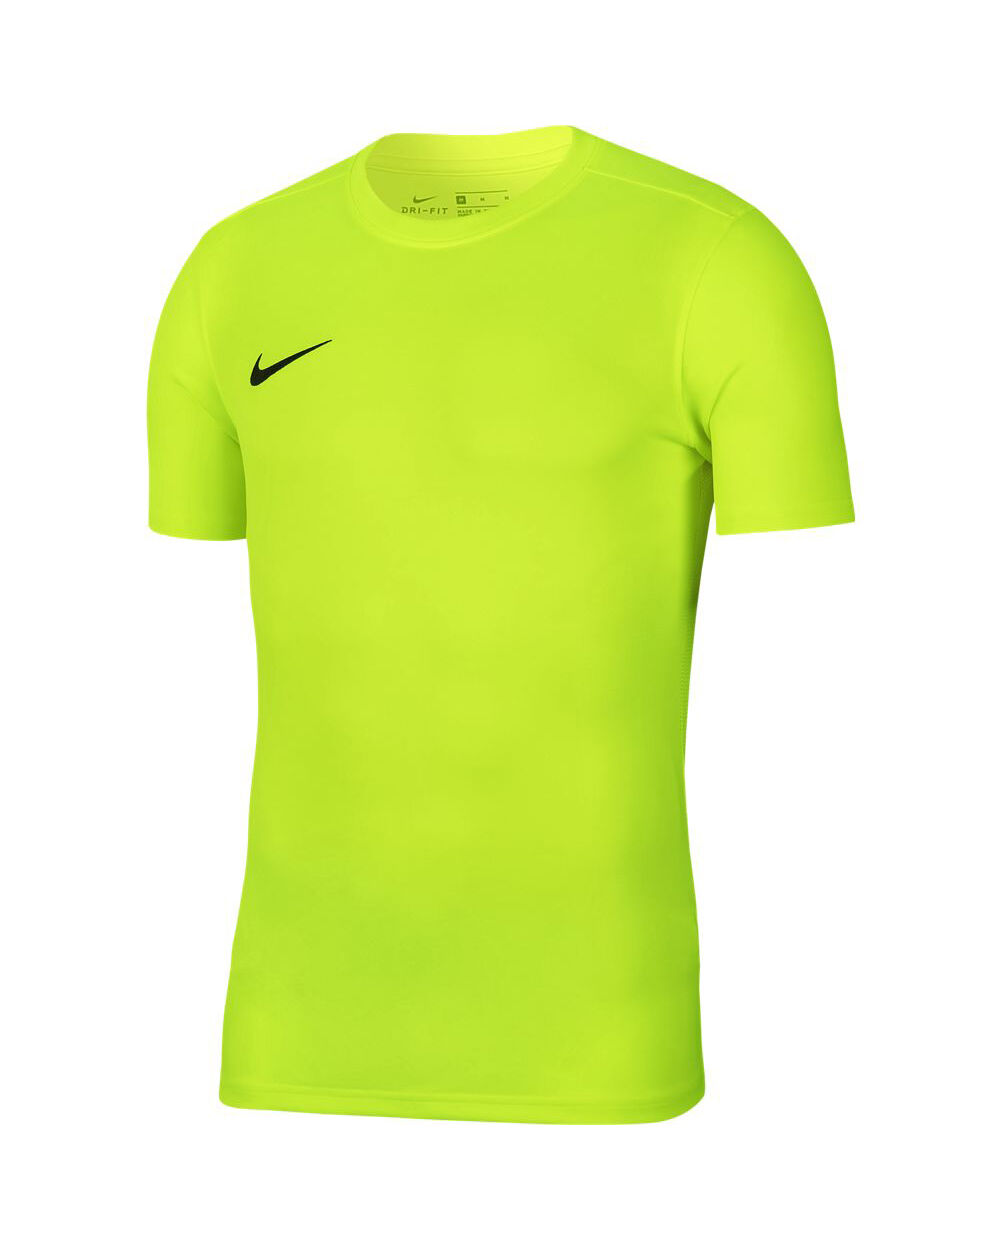 Nike Maglia Park VII Giallo Fluorescente Bambino BV6741-702 XS